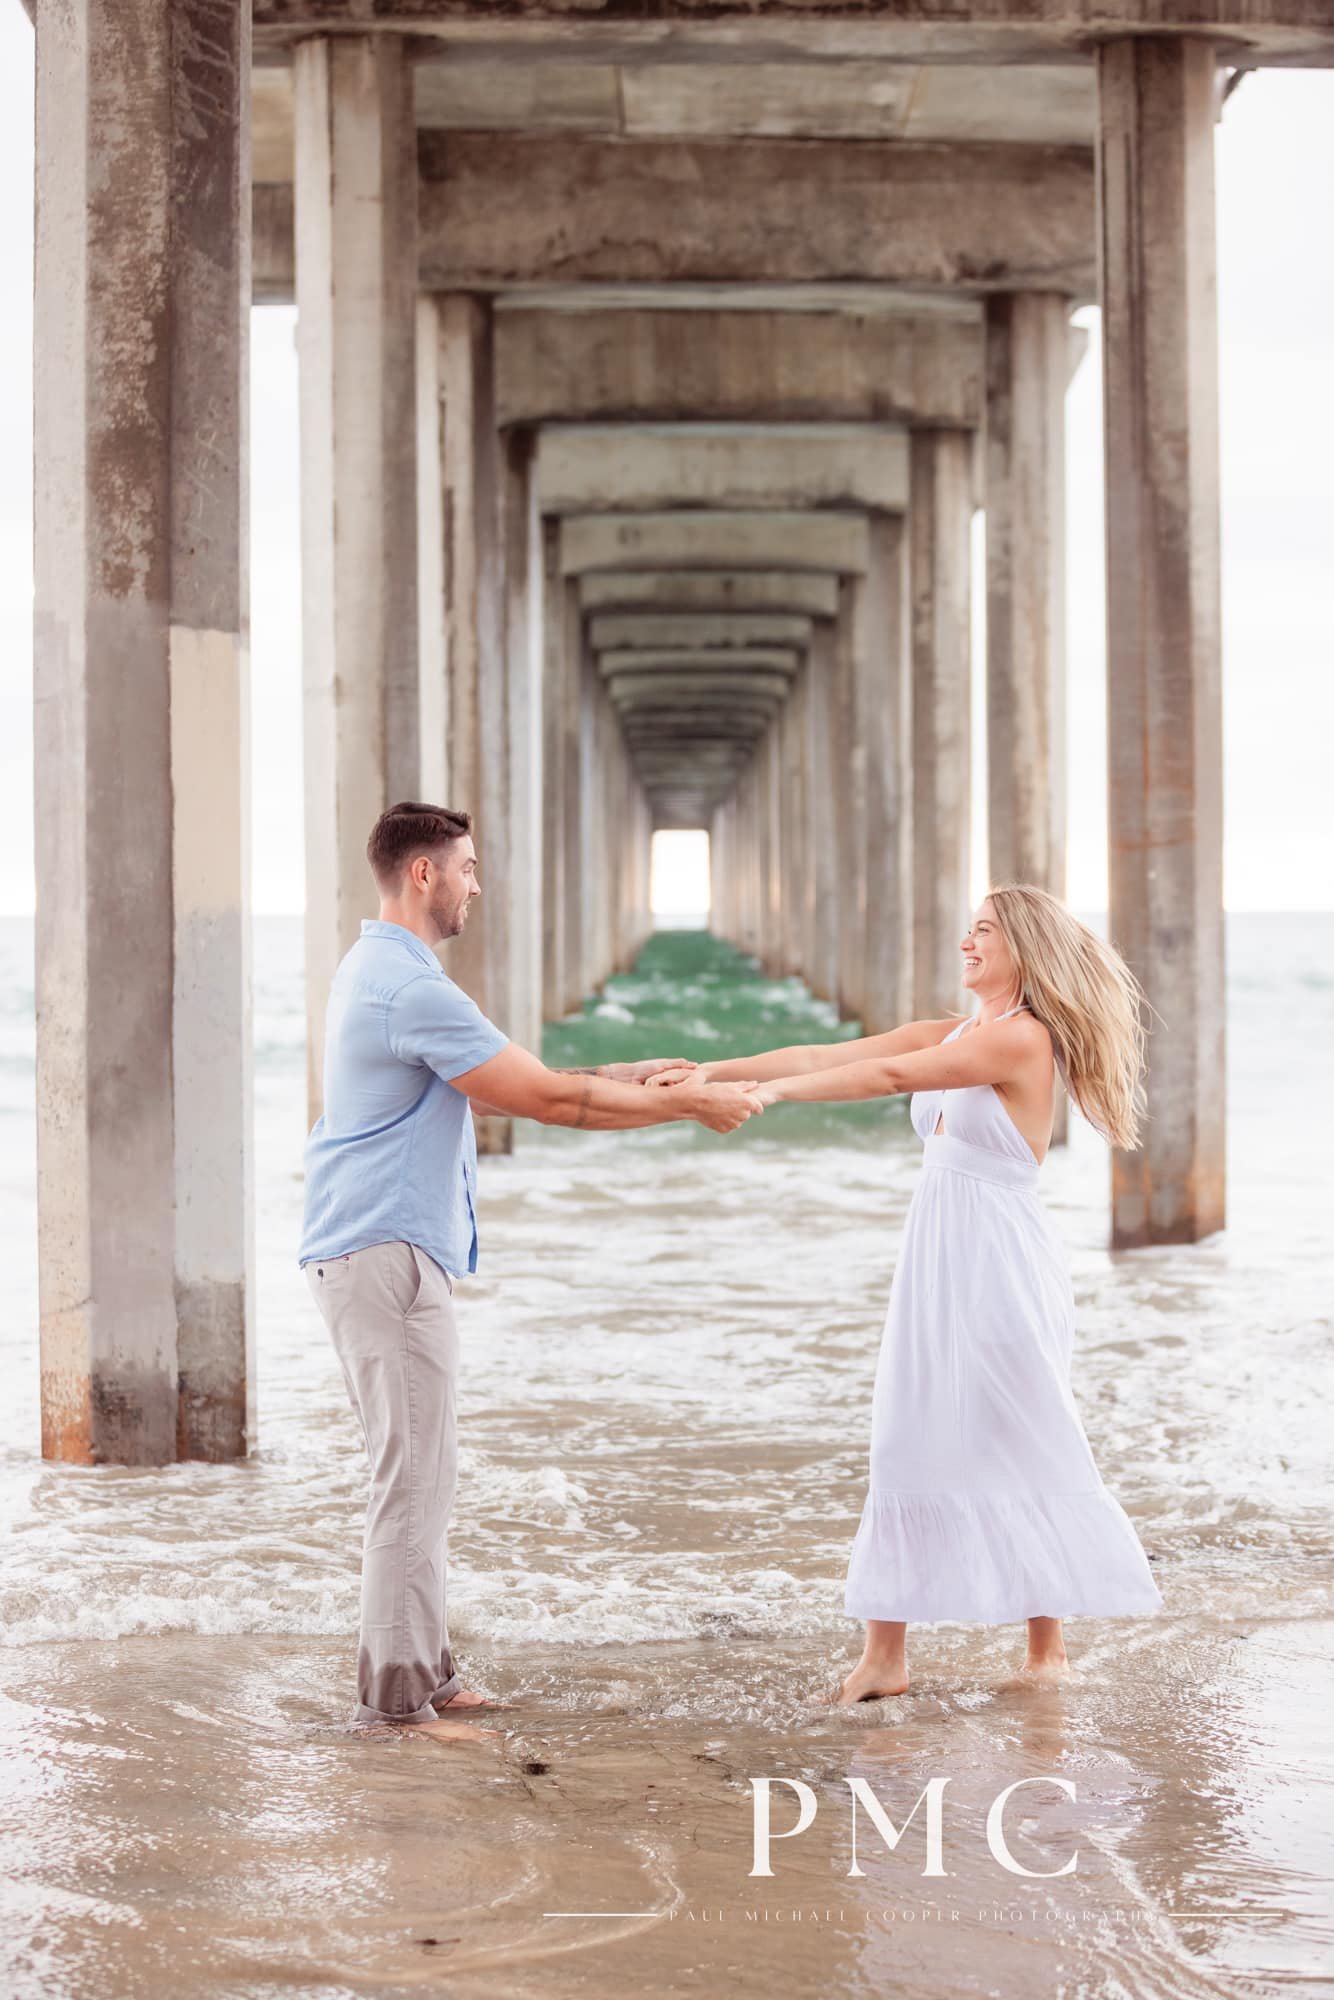 Scripps Pier Engagement Session - La Jolla - Best San Diego Wedding Photographer-14.jpg